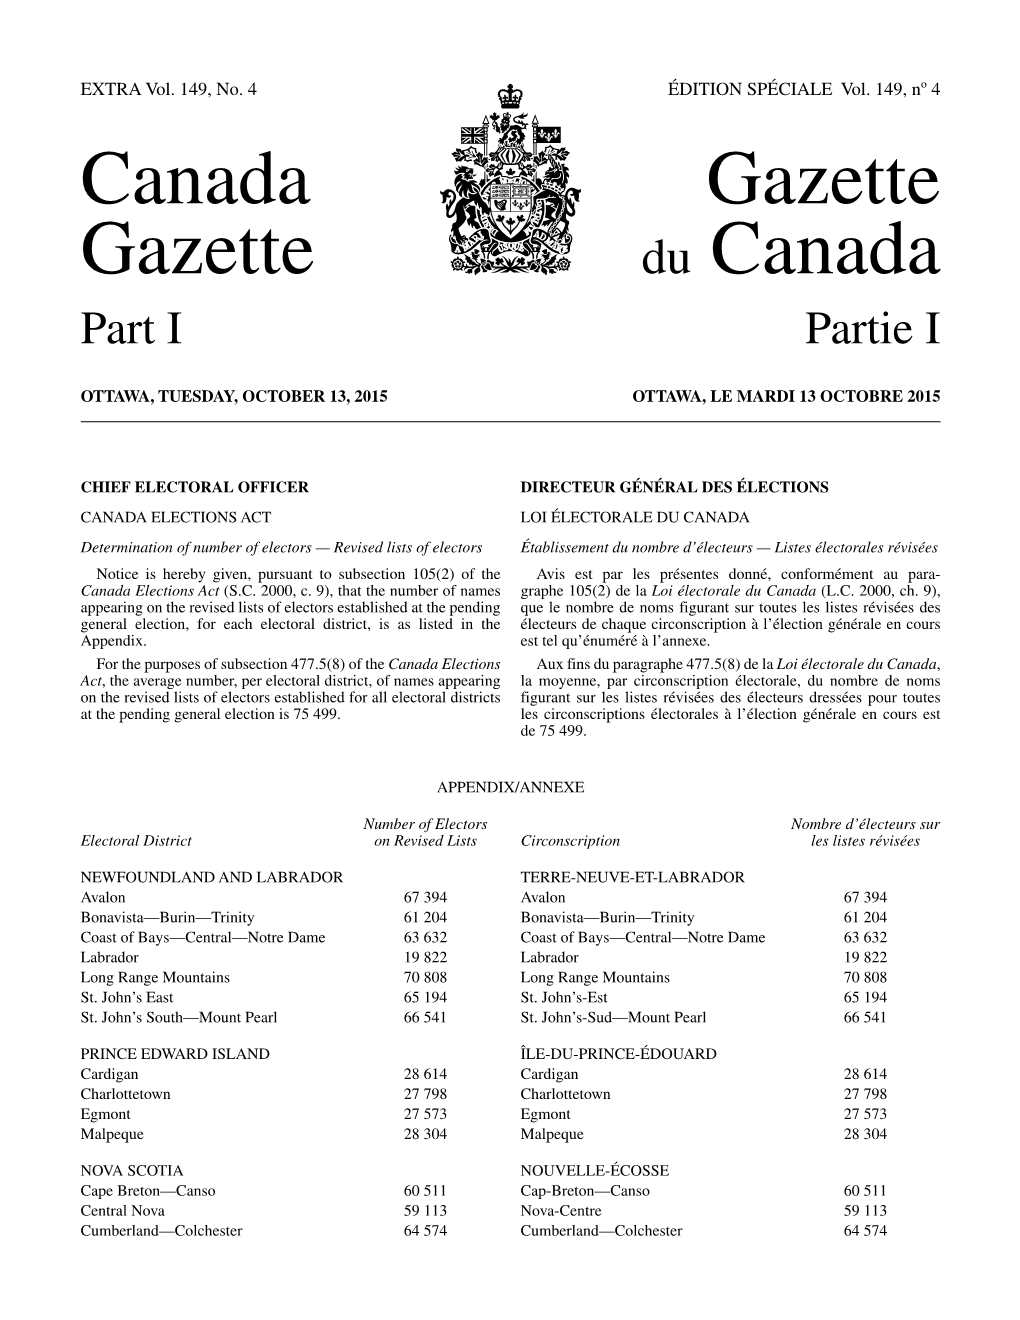 Canada Gazette, Part I, Extra